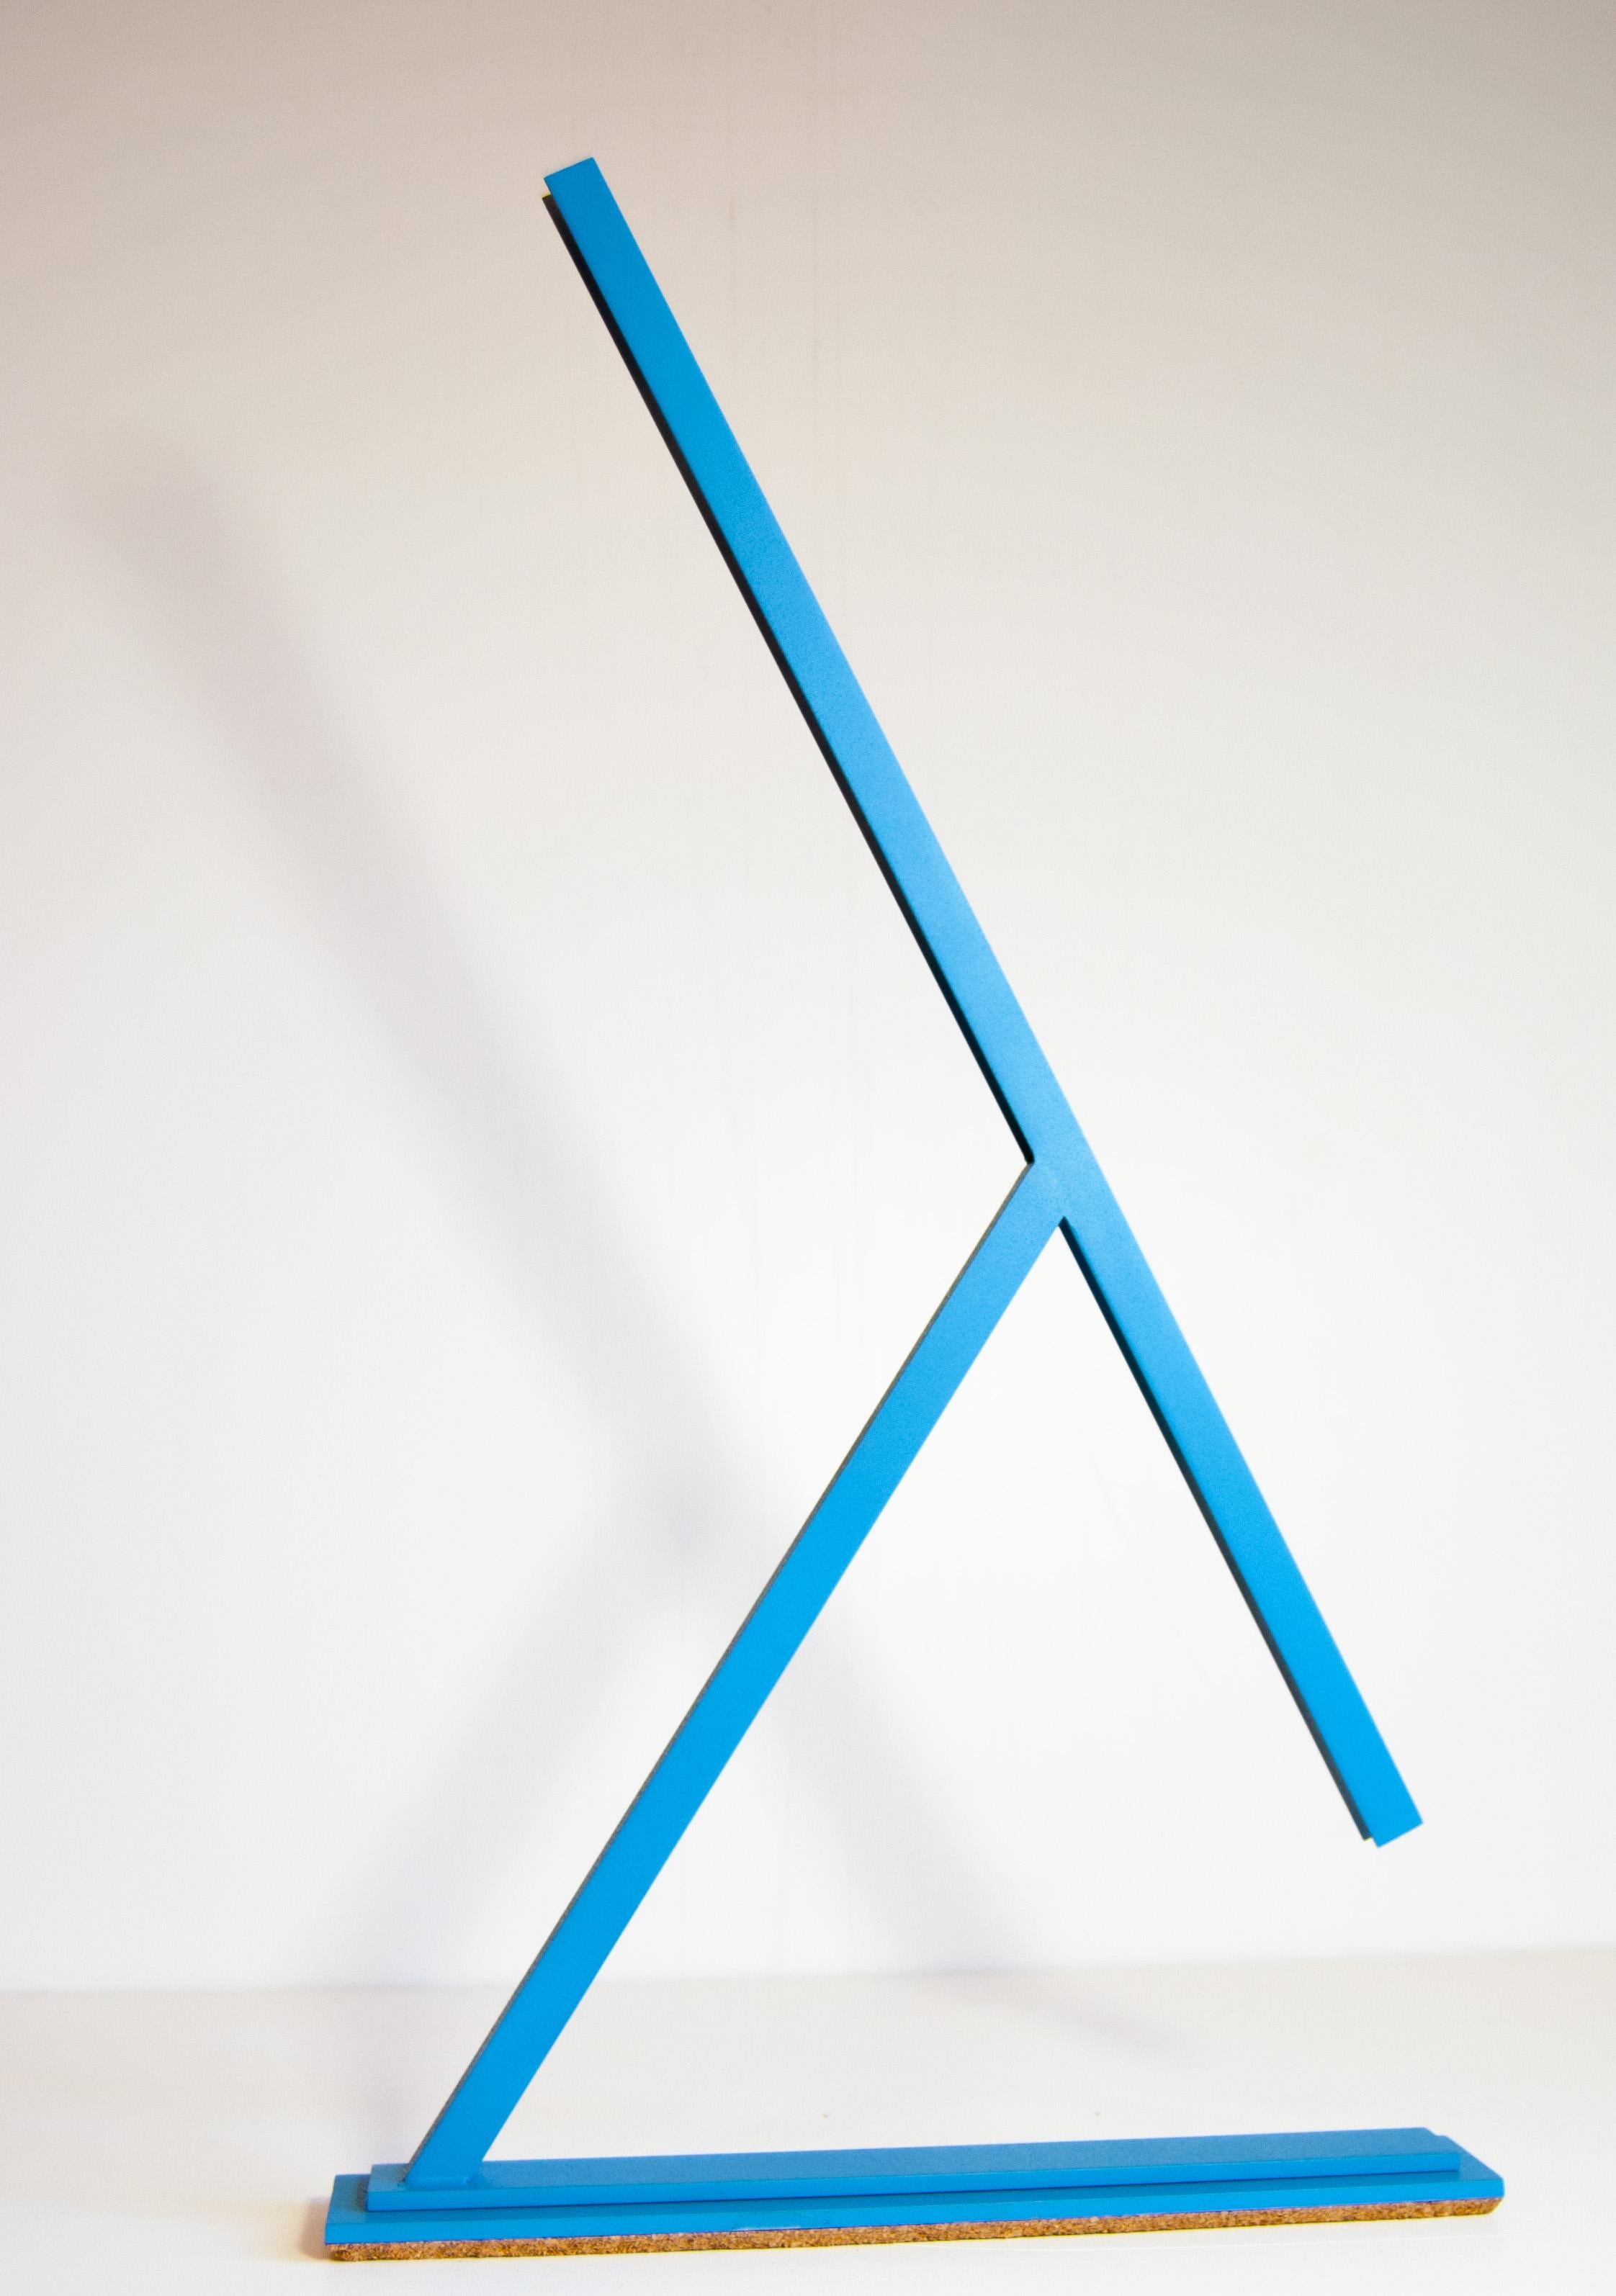 Achille est une lampe de table conçue par Tommaso Cristofaro fabriquée uniquement sur commande selon une méthode hautement artisanale.
Pour la construction, on utilise des matériaux tels que l'aluminium de 1,5 mm d'épaisseur qui, après une phase de